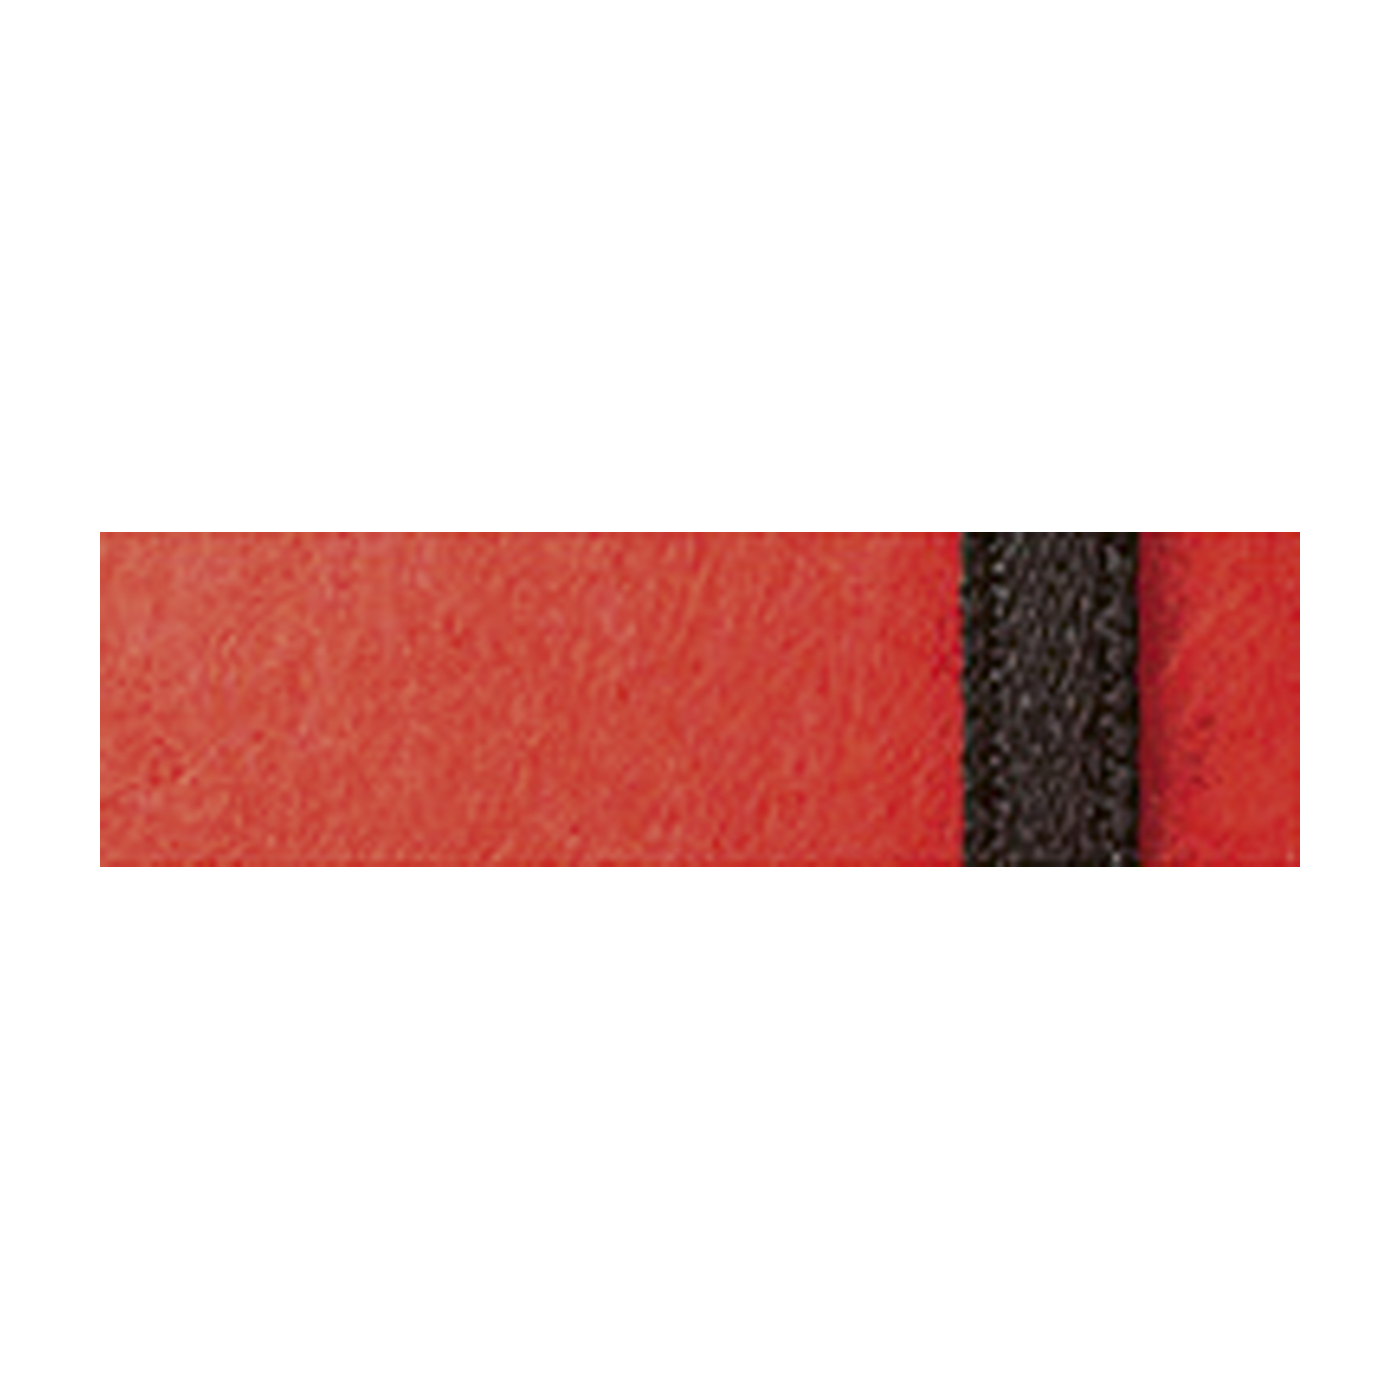 Papiertaschen, rot mit schwarzem Band, 80 x 80 mm - 10 Stück